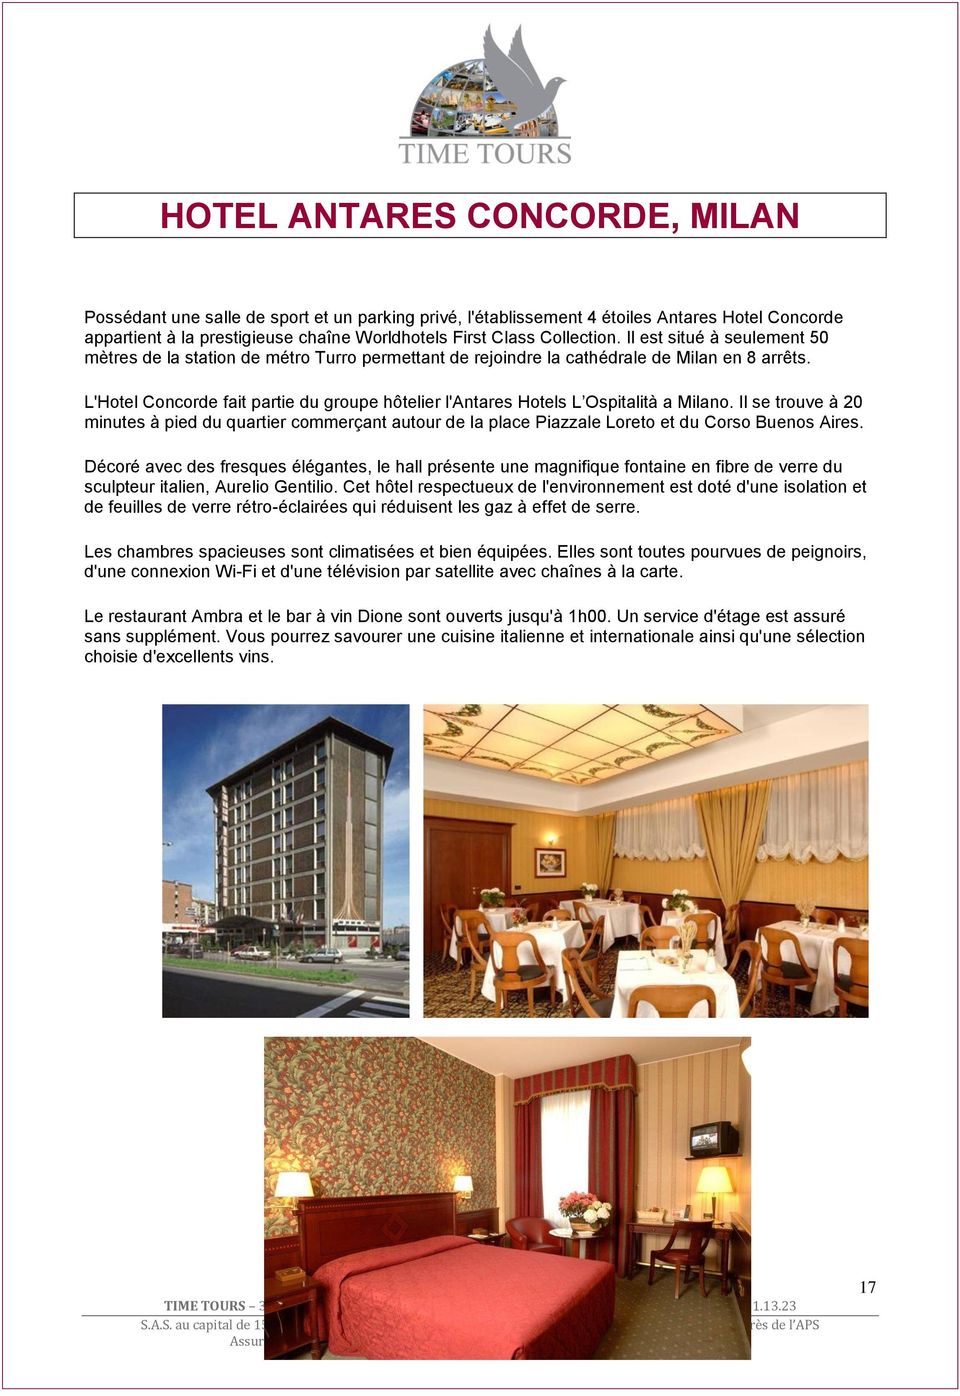 L'Hotel Concorde fait partie du groupe hôtelier l'antares Hotels L Ospitalità a Milano.